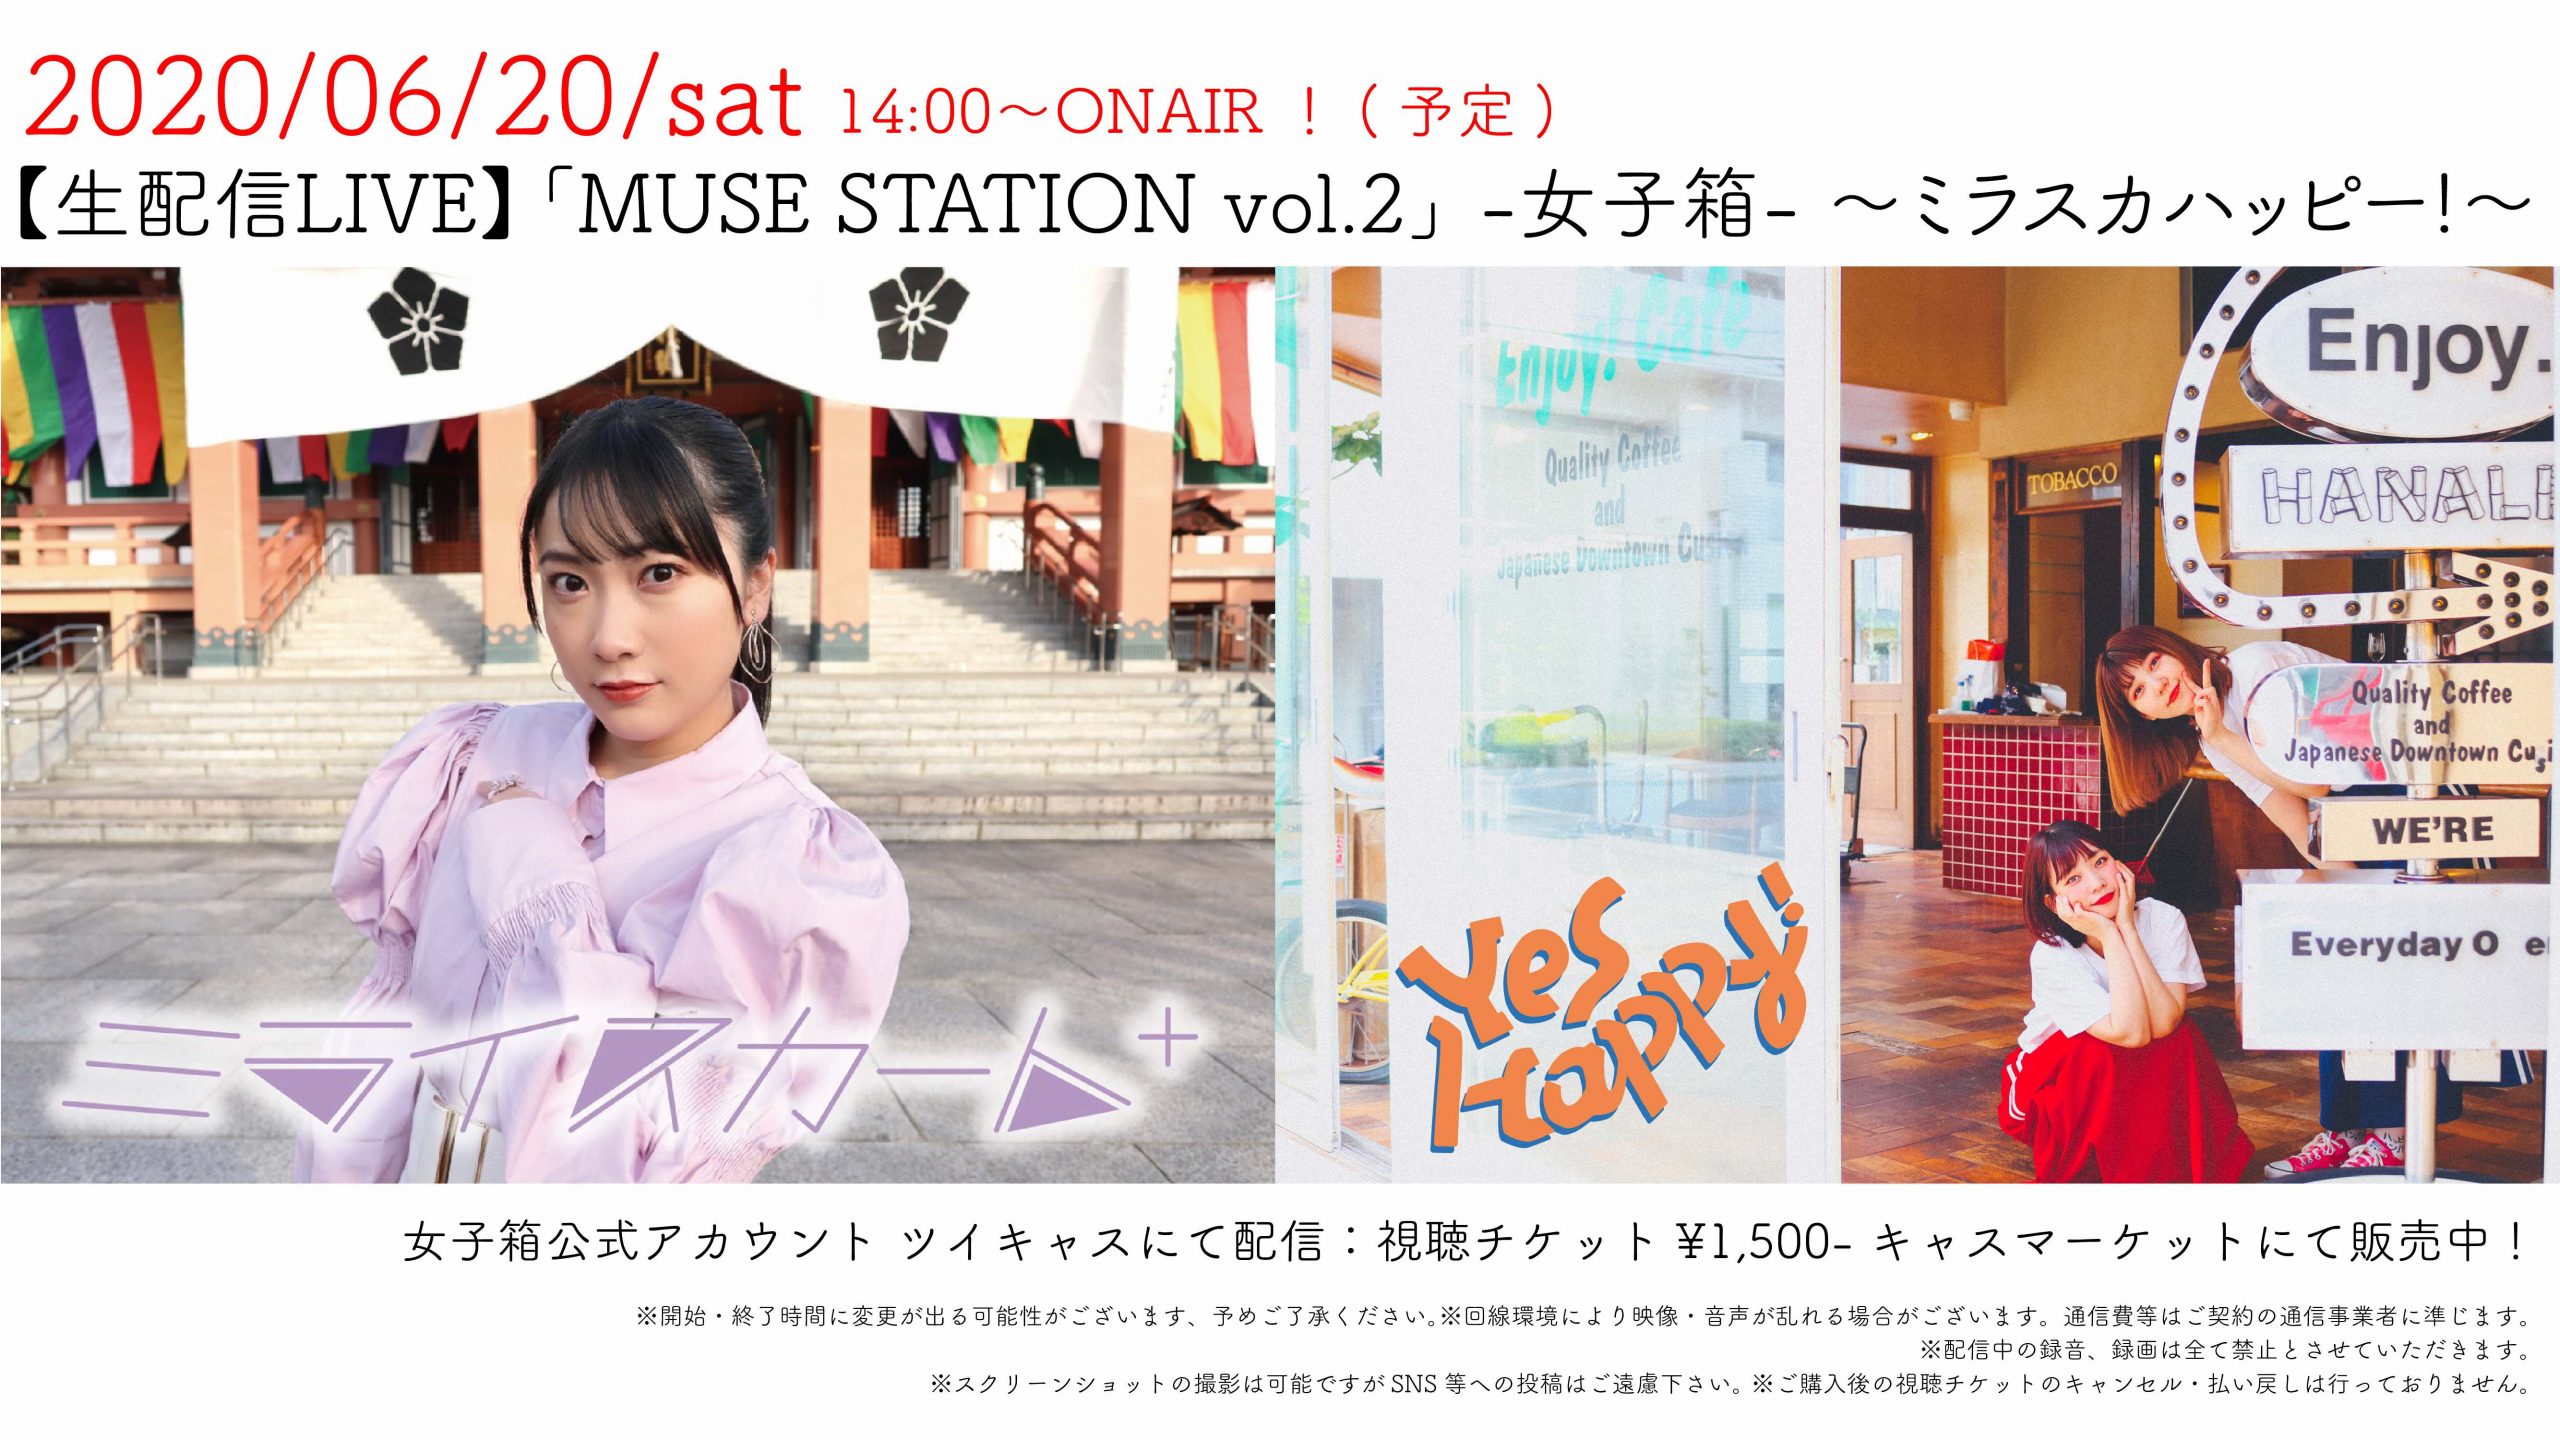 【生配信LIVE】「MUSE STATION vol.2」 -女子箱- ~ミラスカハッピー!~　　　　　　　　 大阪府文化芸術活動（無観客ライブ配信）支援事業対象公演